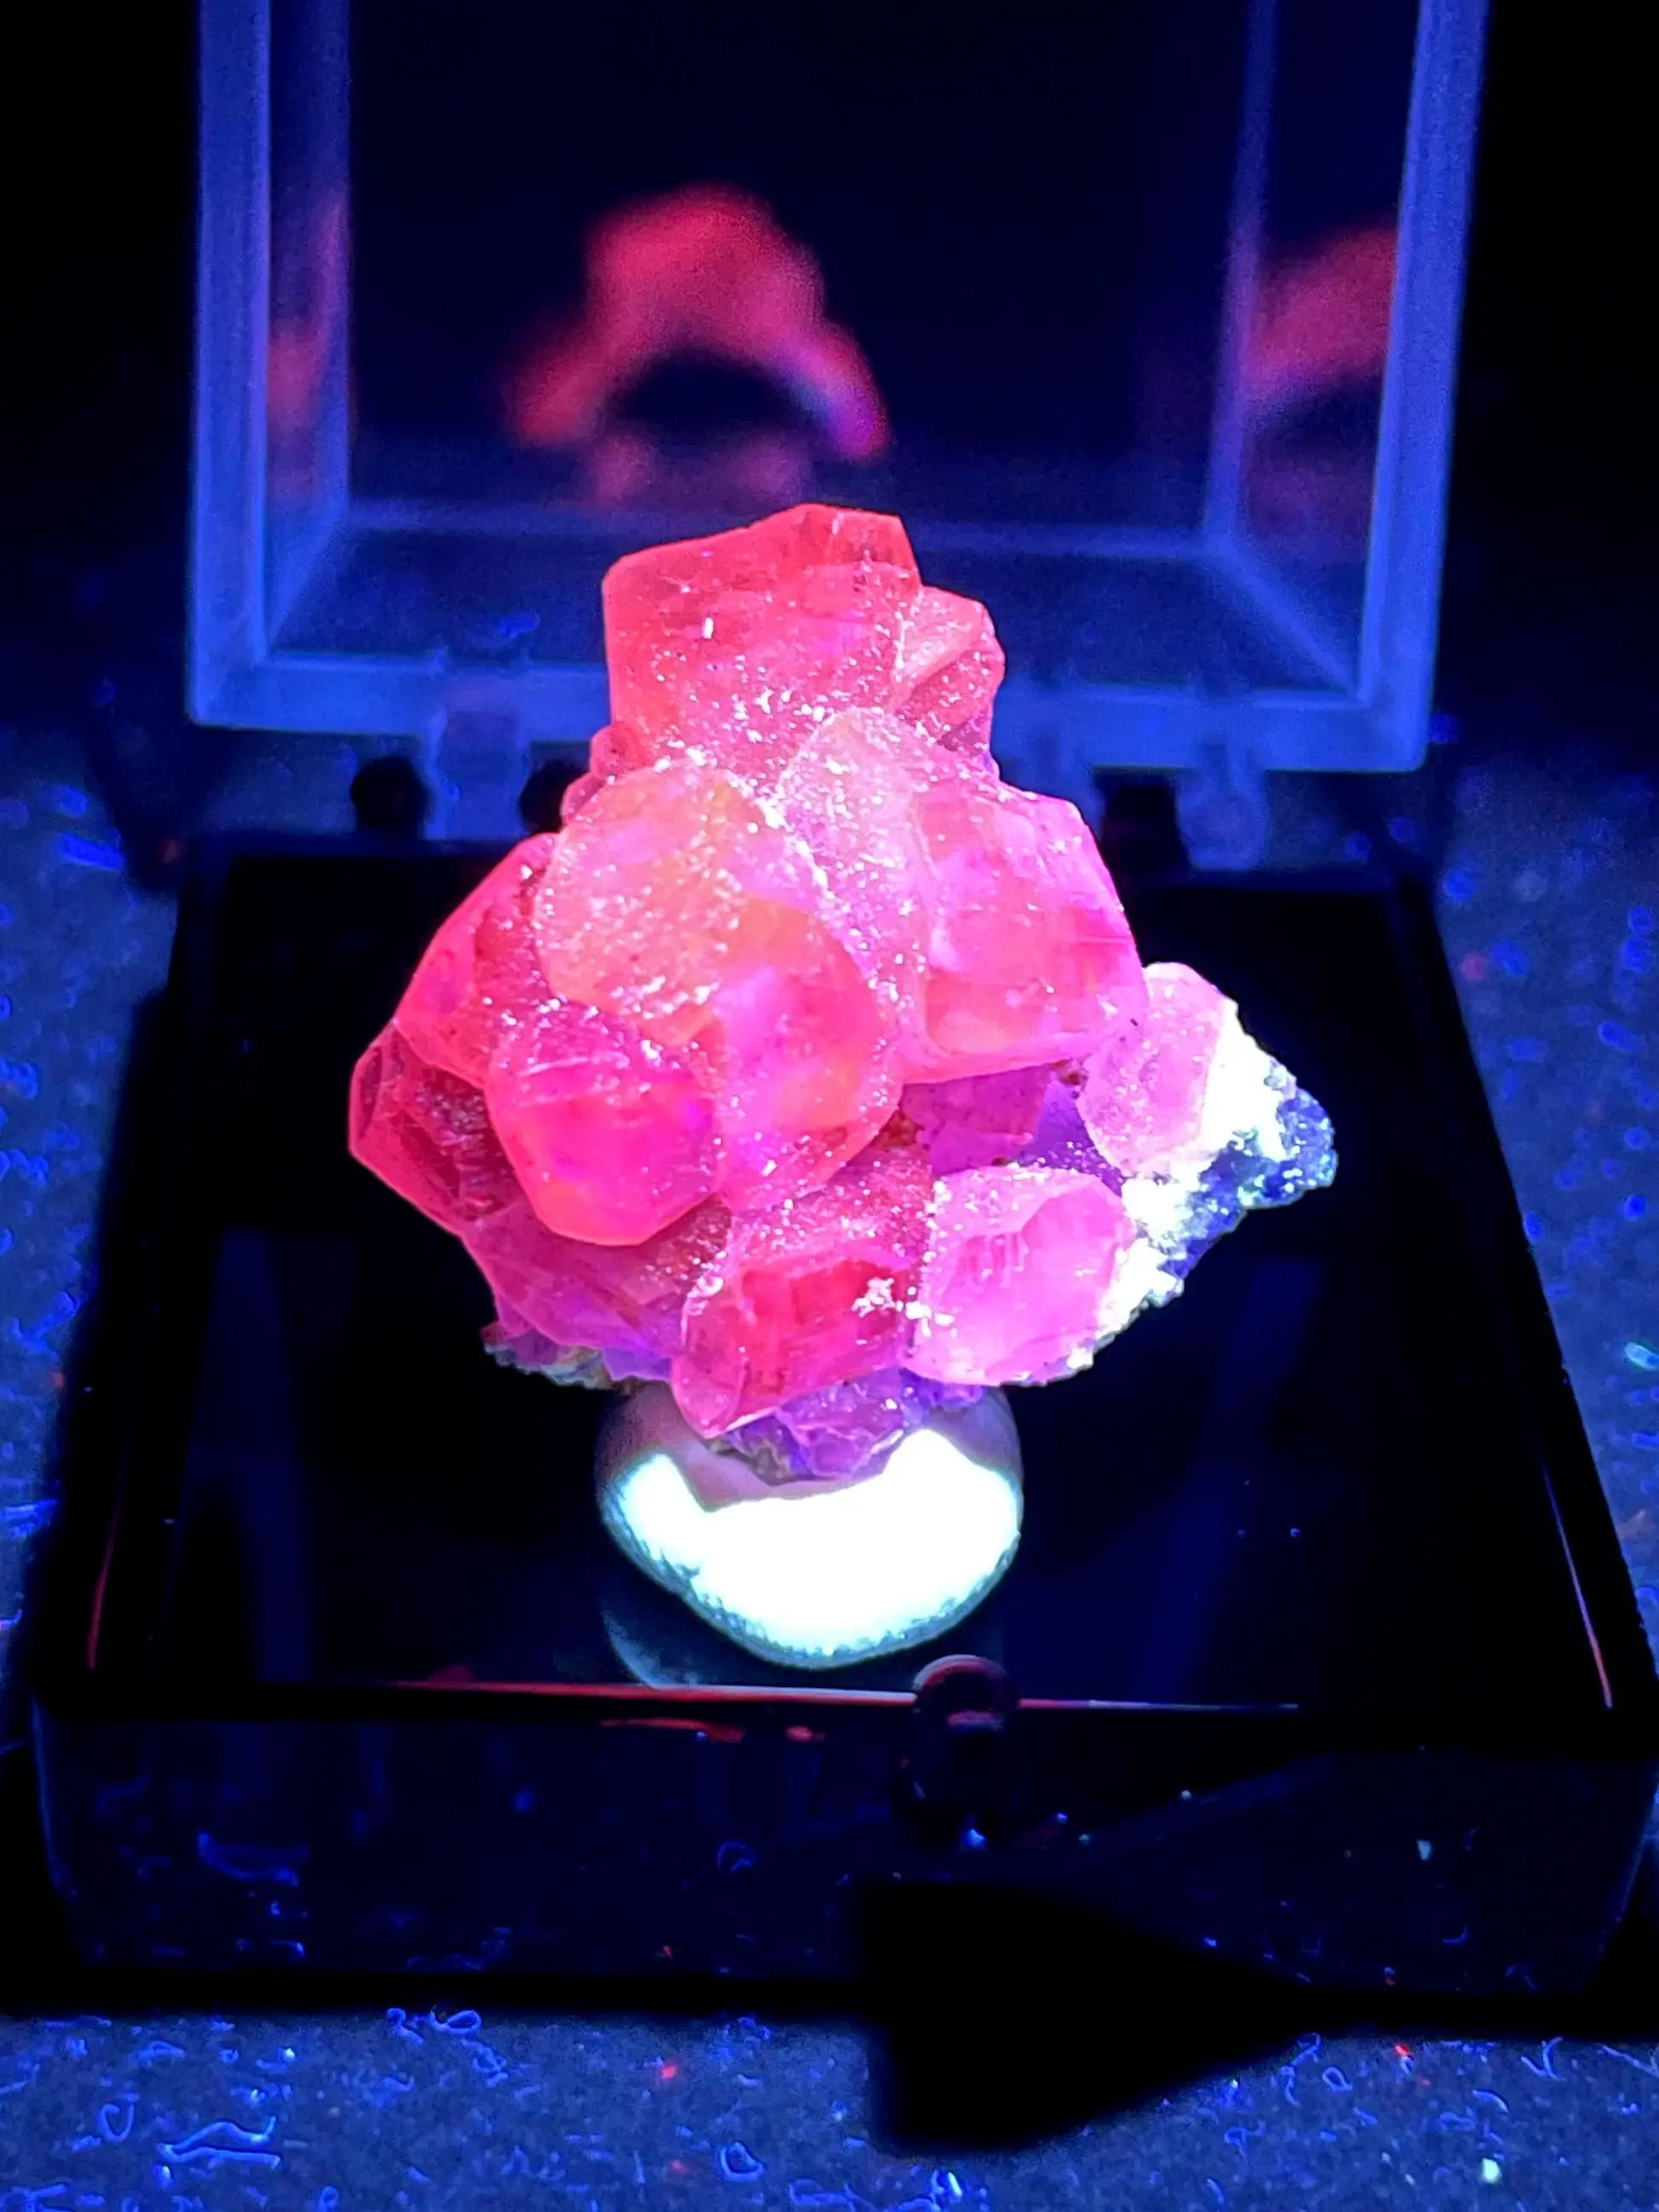 

Новинка! 100% натуральный флуоресцентный кальцит минеральный образец камни и кристаллы Исцеляющие кристаллы кварц + коробка размер 3,4 см